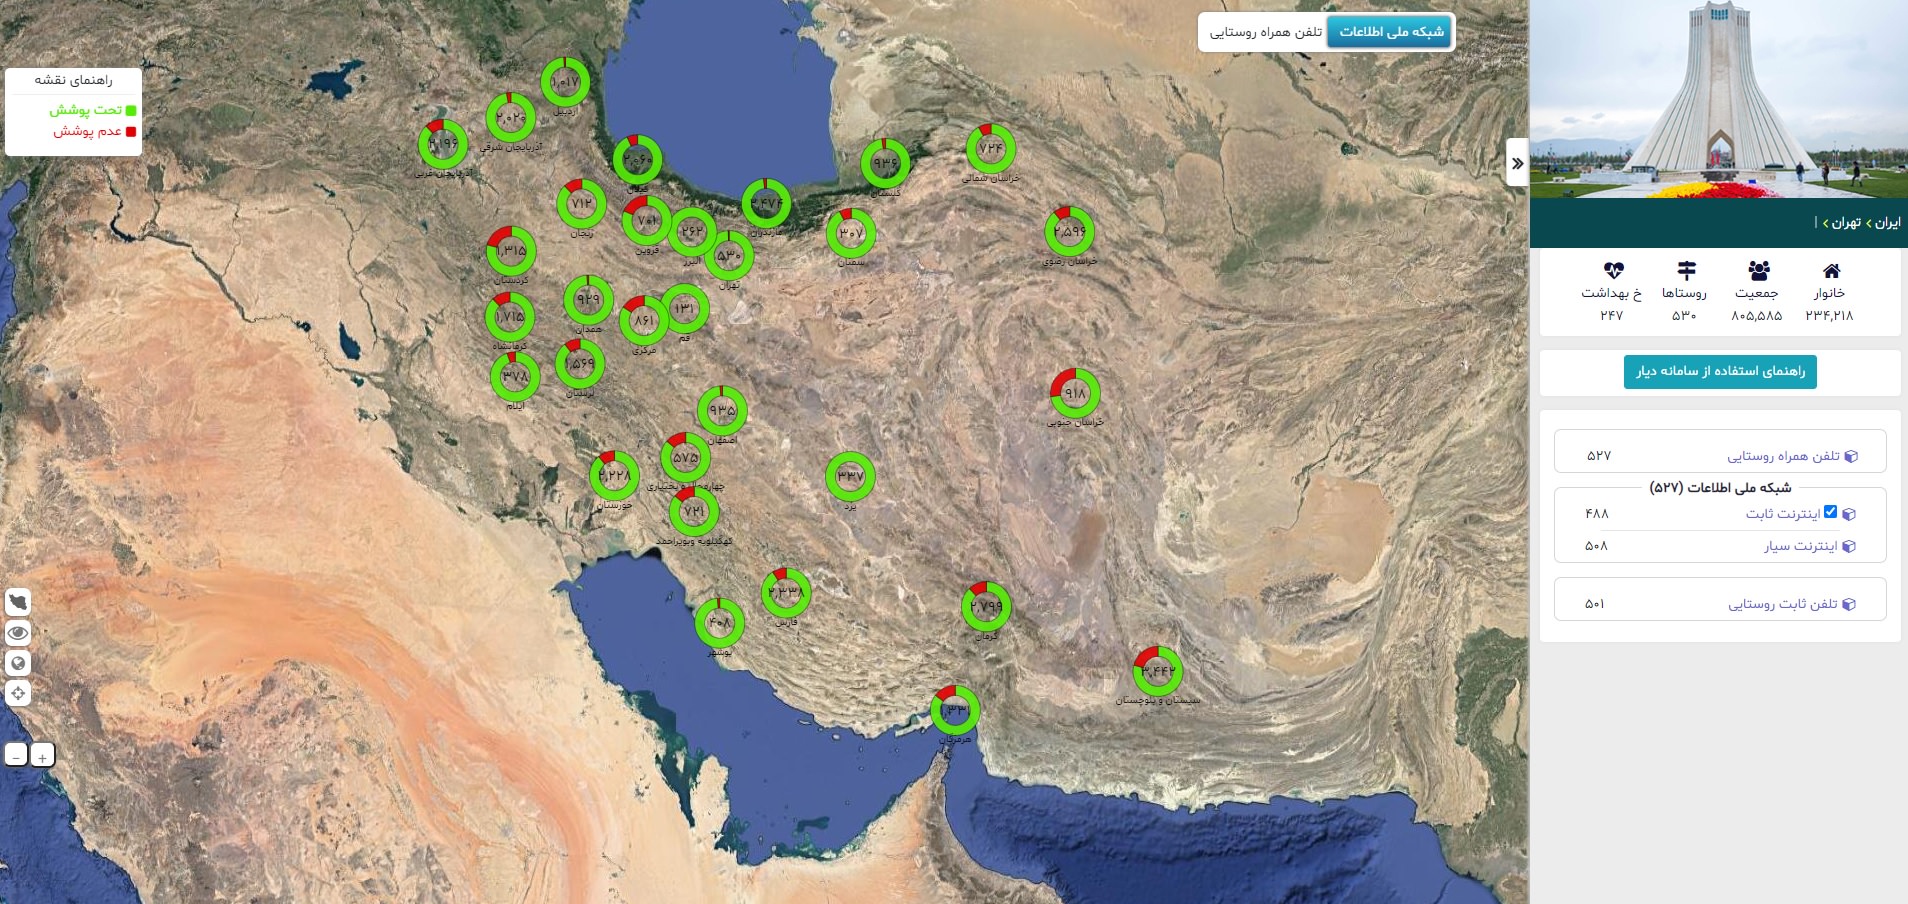 نمایش اطلاعات میزان دسترسی ایرانیان به اینترنت روی نقشه ایران